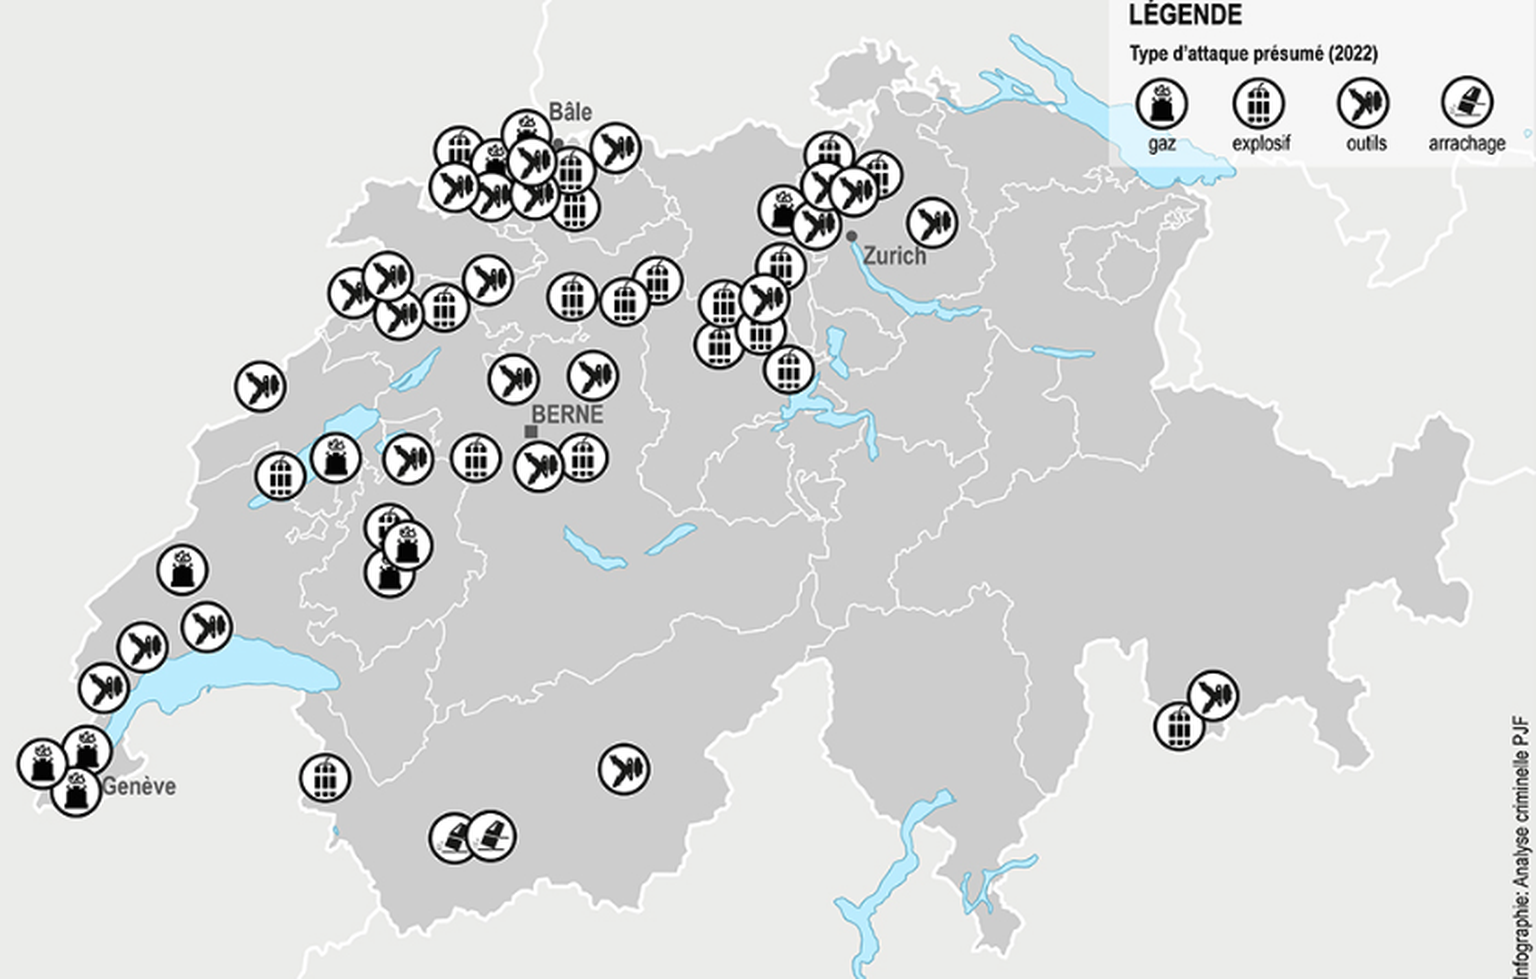 Les attaques de bancomats à l&#039;explosif diminuent en Suisse